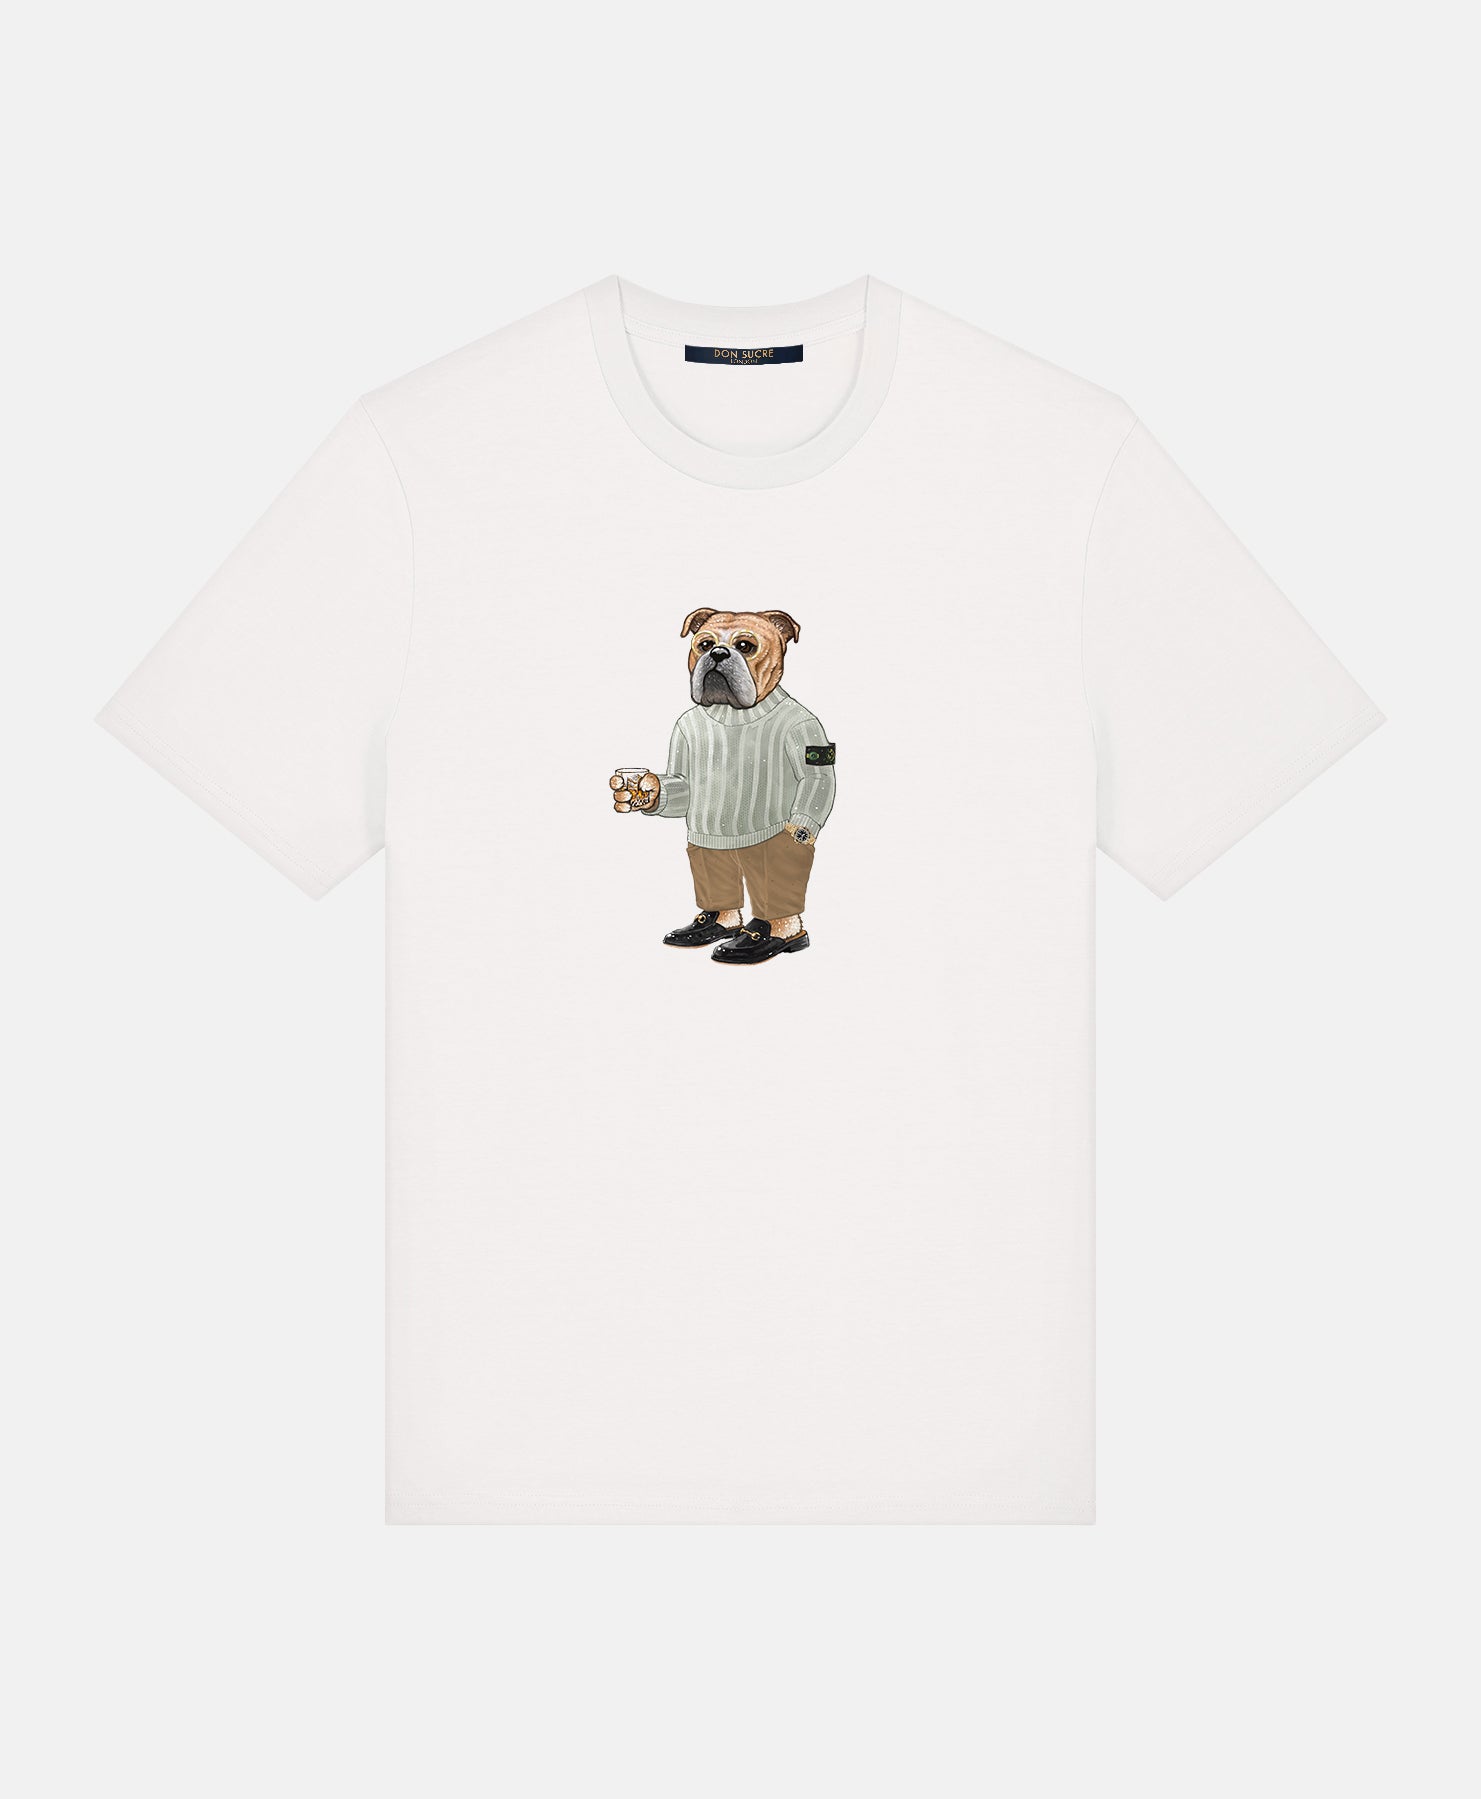 Bulldog "Baller" T-shirt